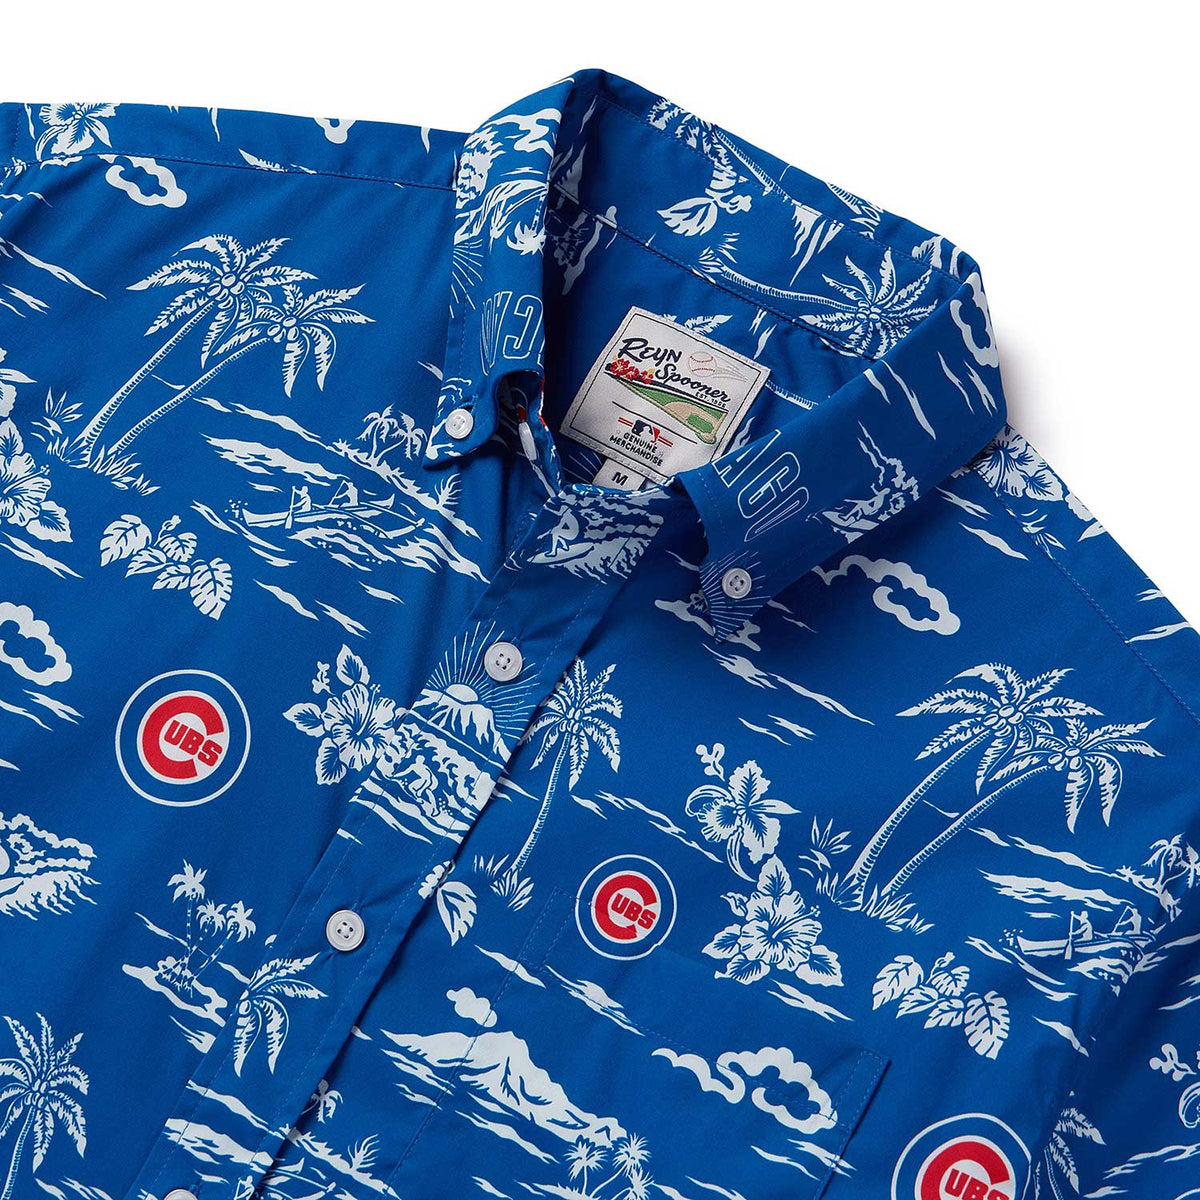 Nouvette Chicago Cubs Hawaiian Shirt